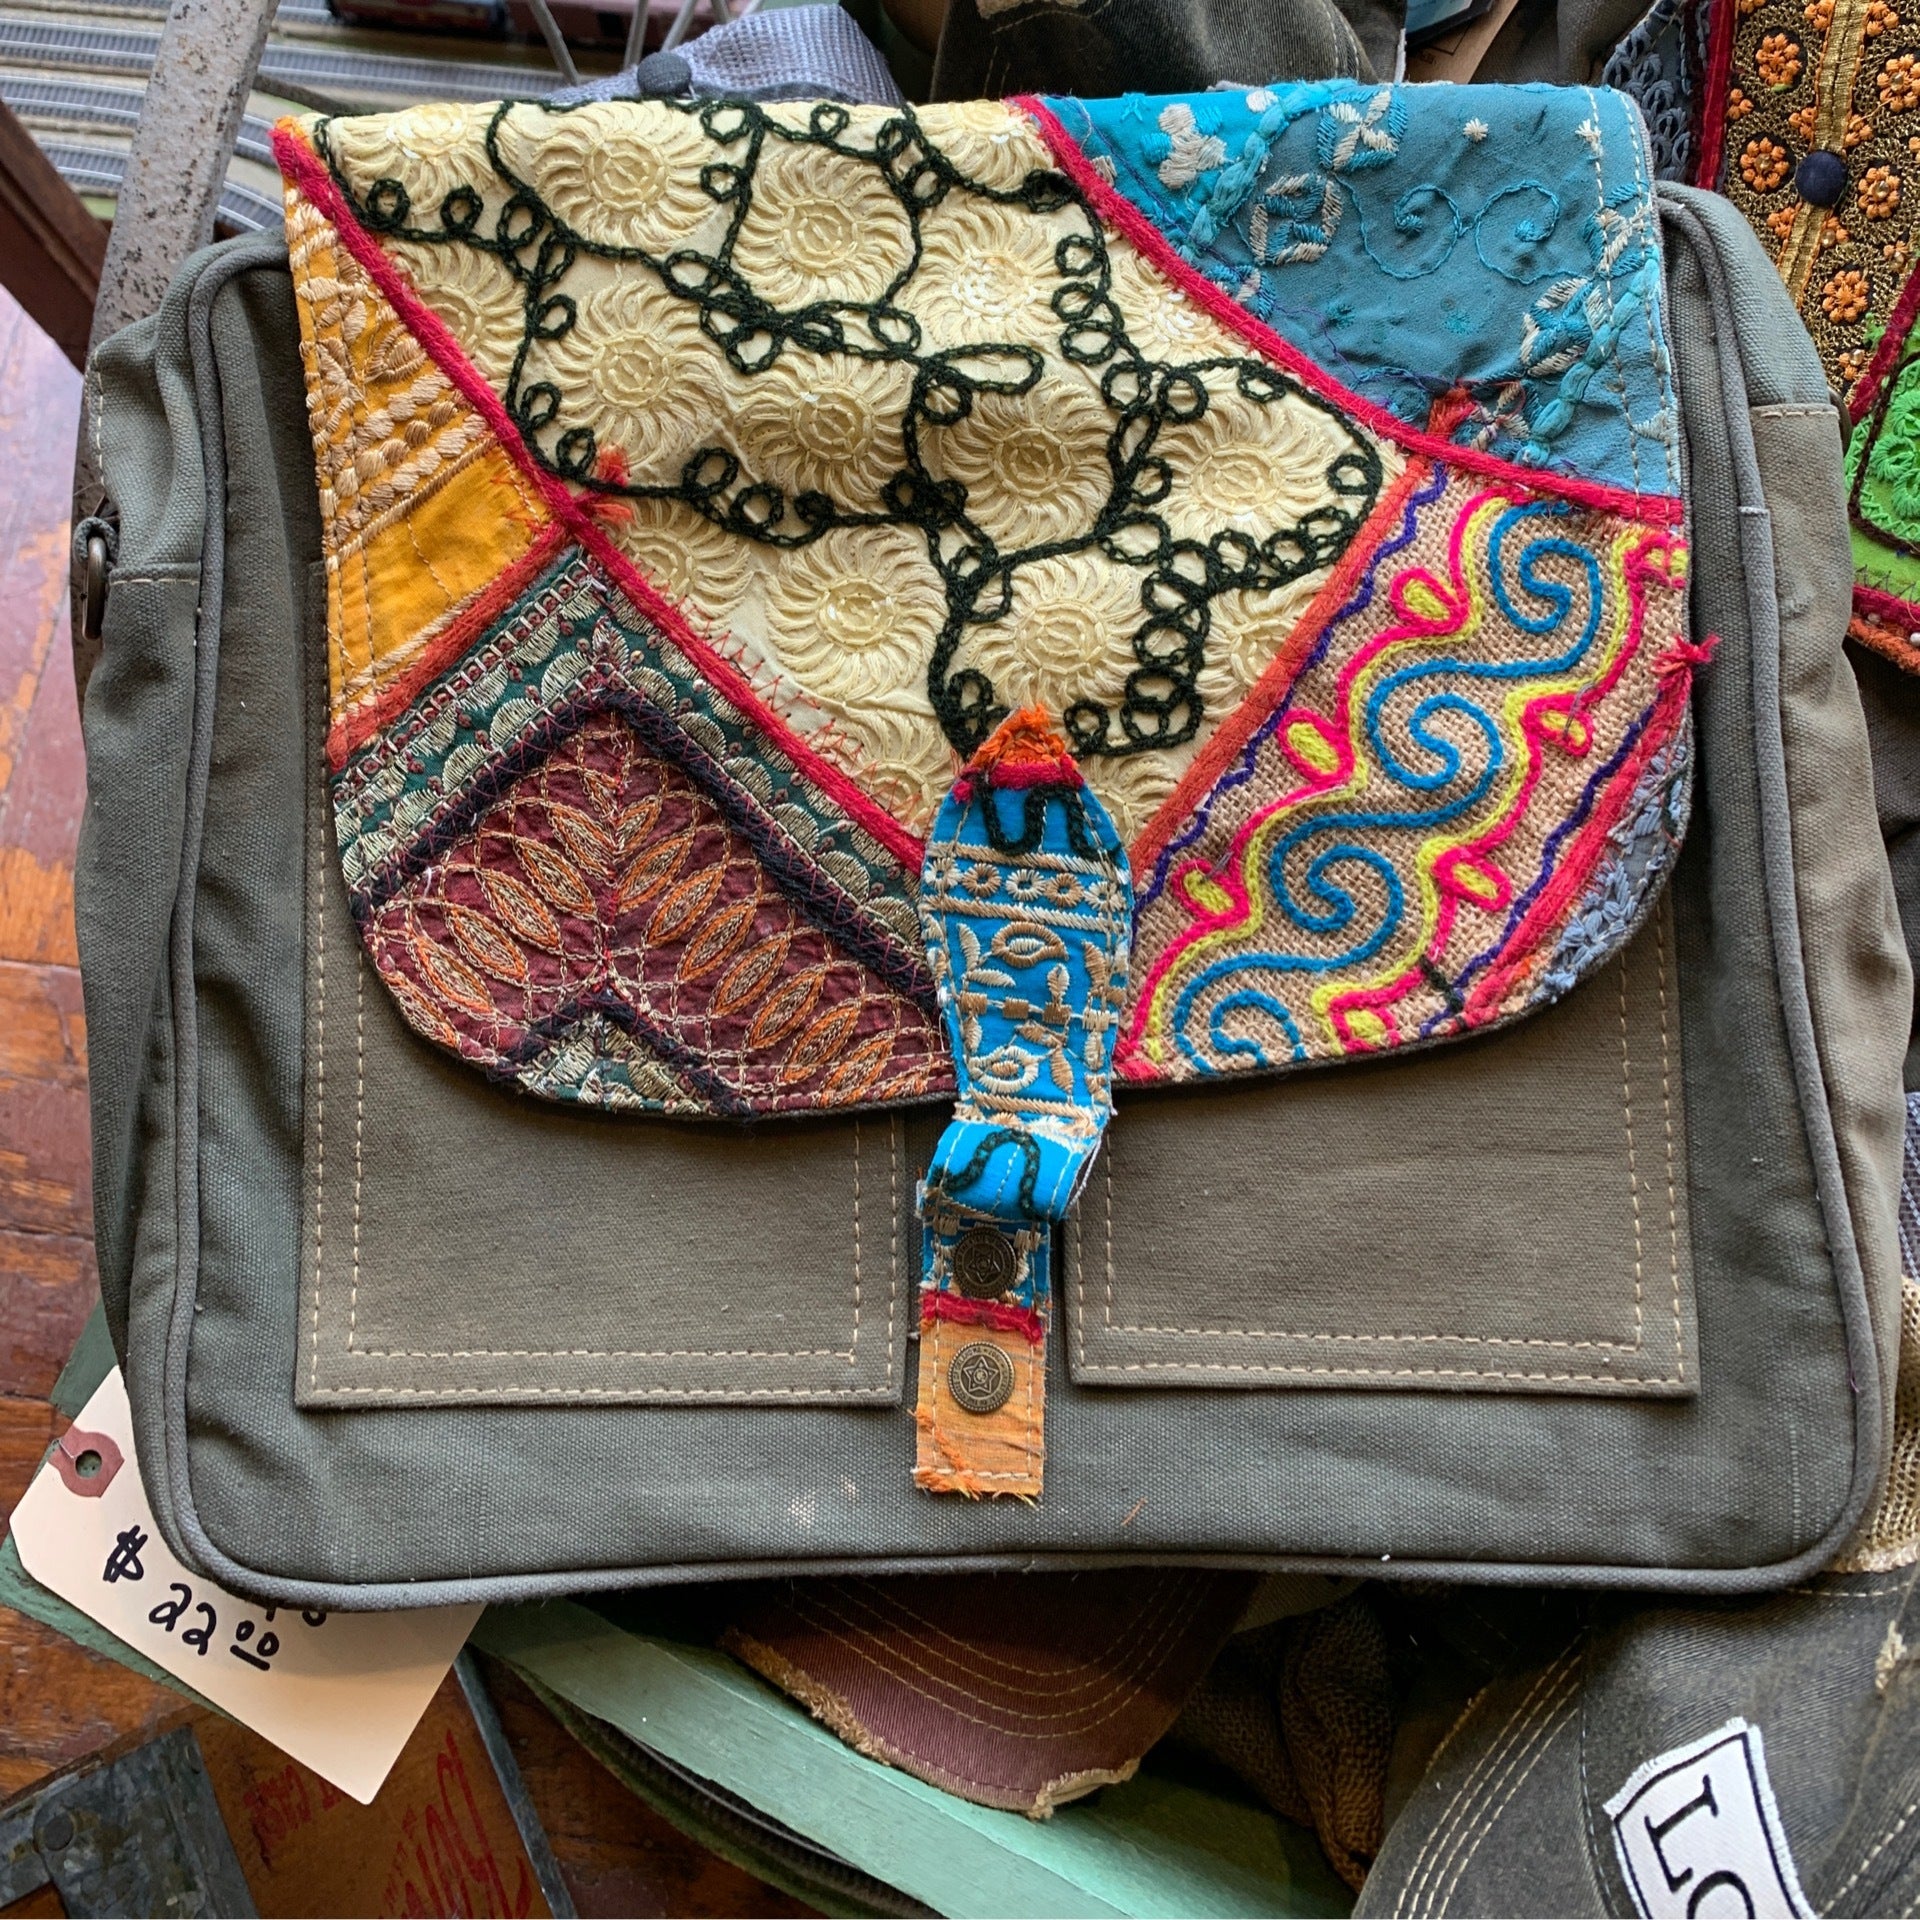 Scrapshala Handloom Textile Upcycled Chamkila Tote Bag - Buy on Upcycleluxe